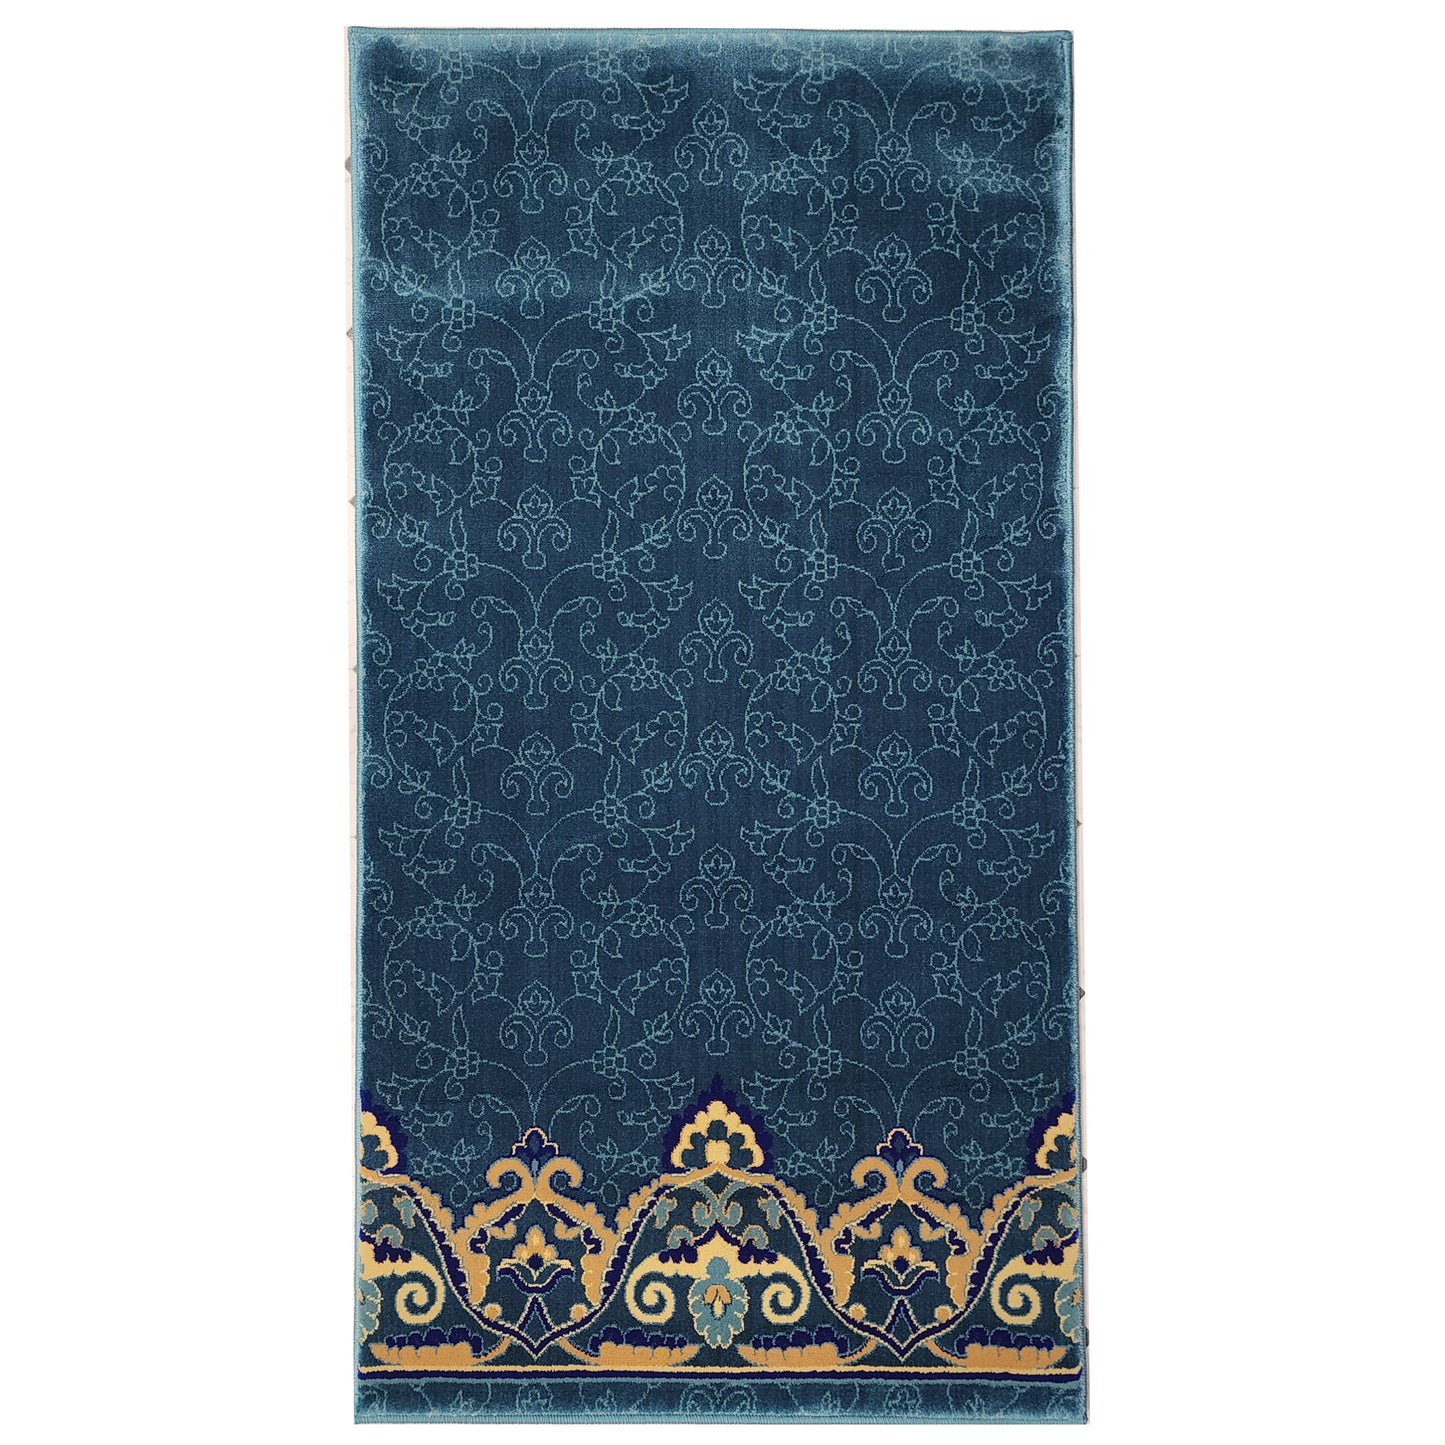 OMAR Light Blue Single Prayer Carpet Mat